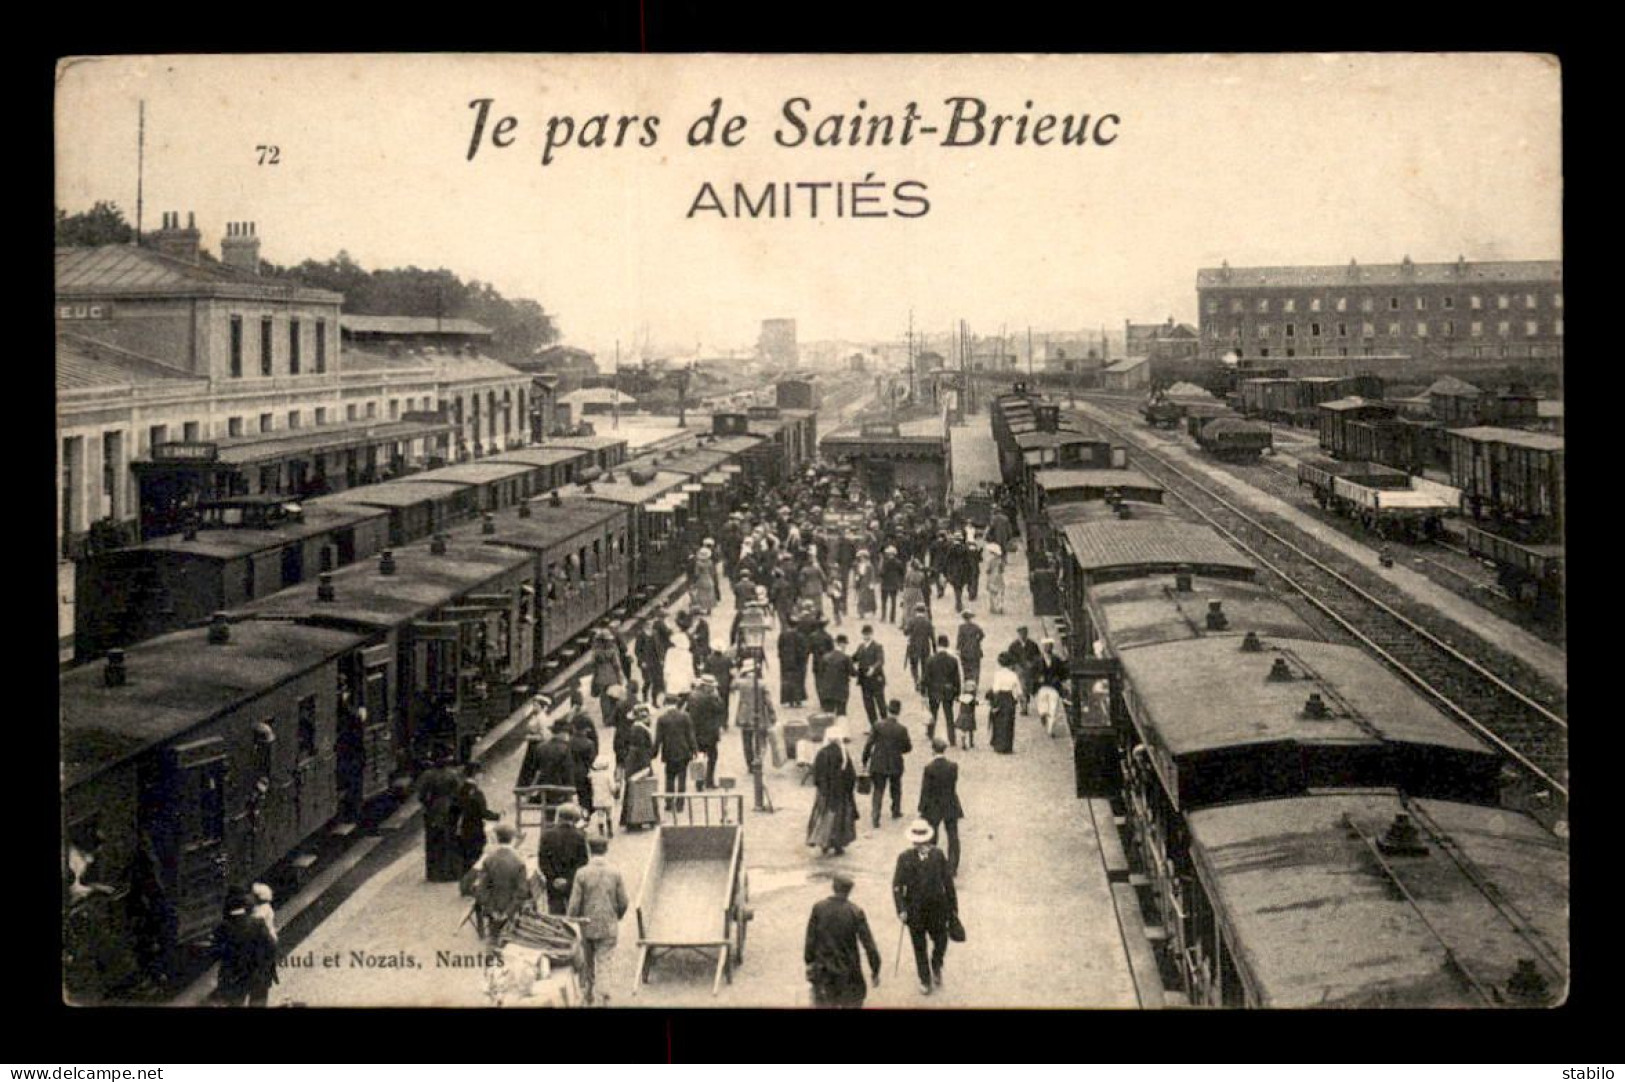 22 - ST-BRIEUC - AMITIES - JE PARS DE ST-BRIEUC - LES TRAINS EN GARE DE CHEMIN DE FER - Saint-Brieuc